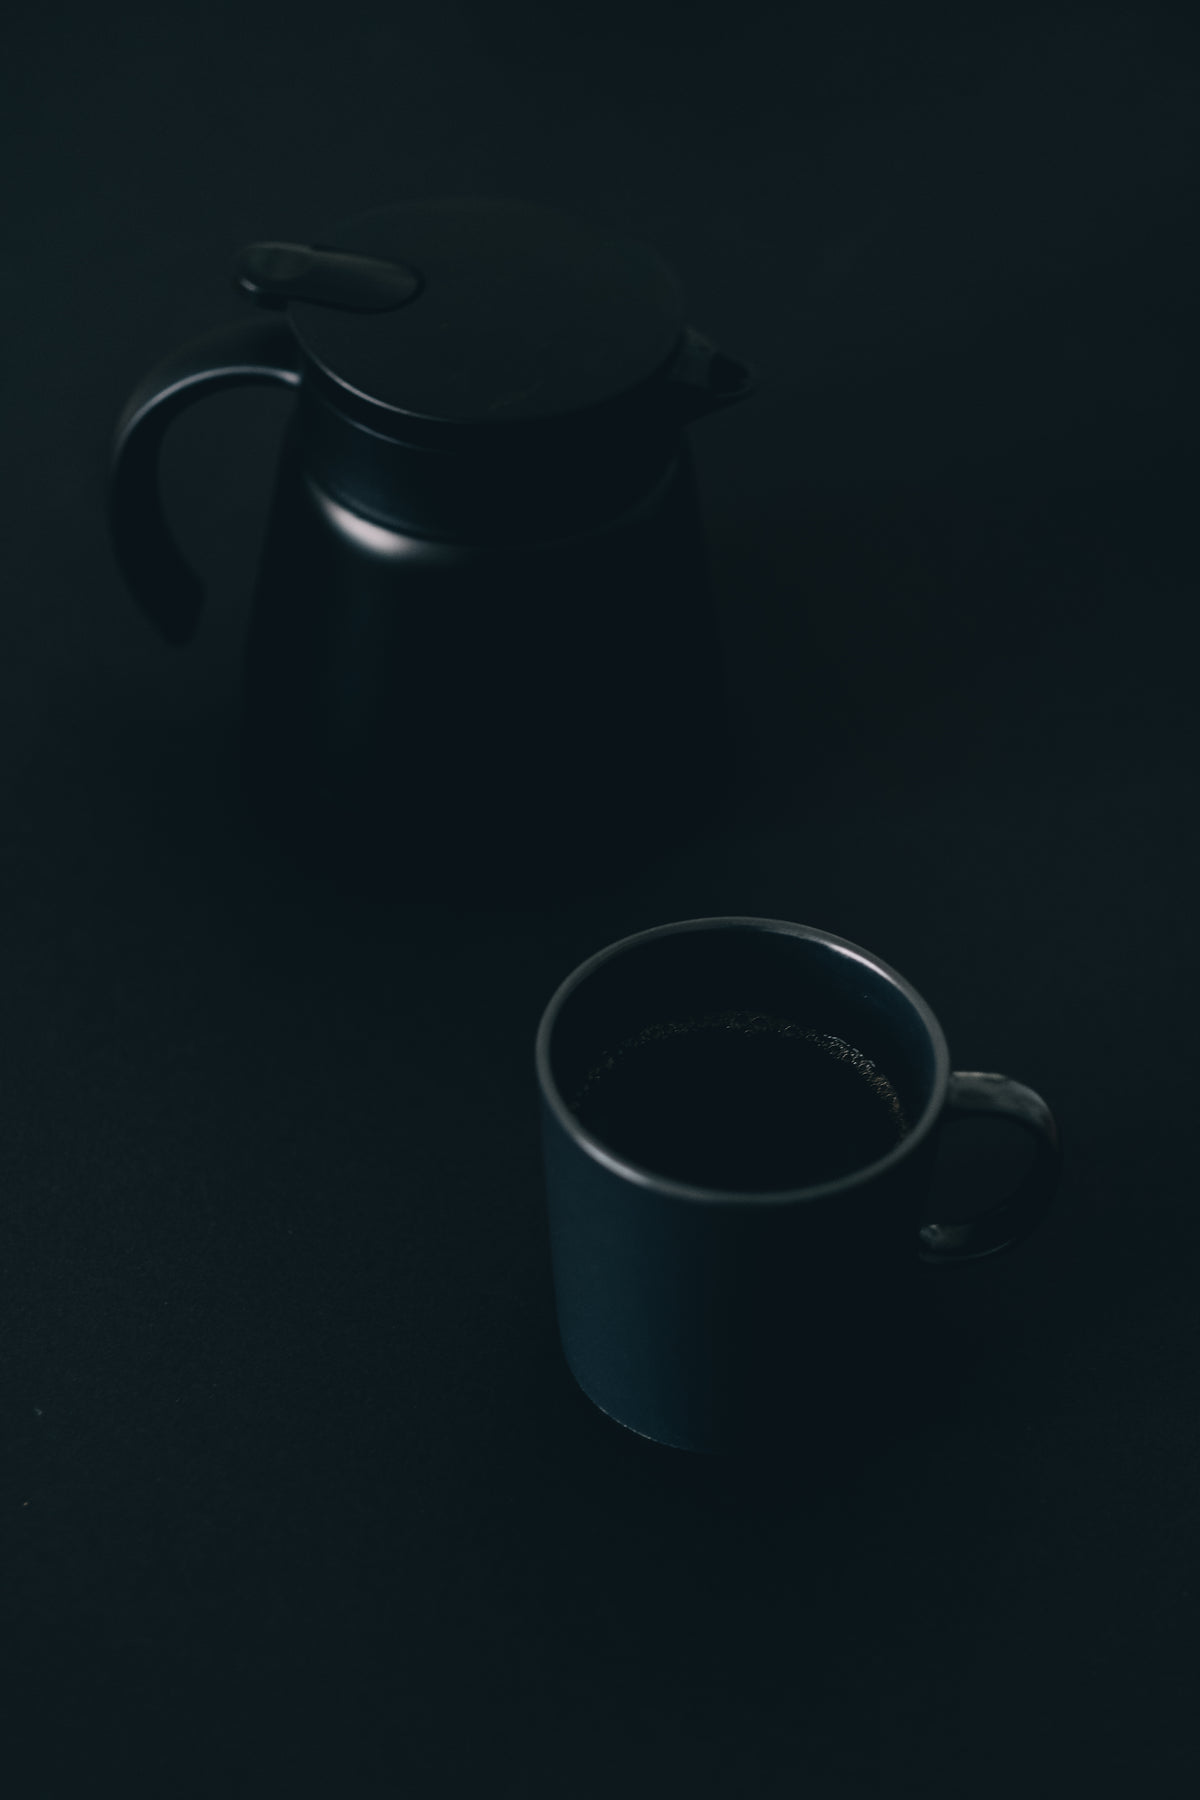 咖啡杯和壶放在黑色的表面上